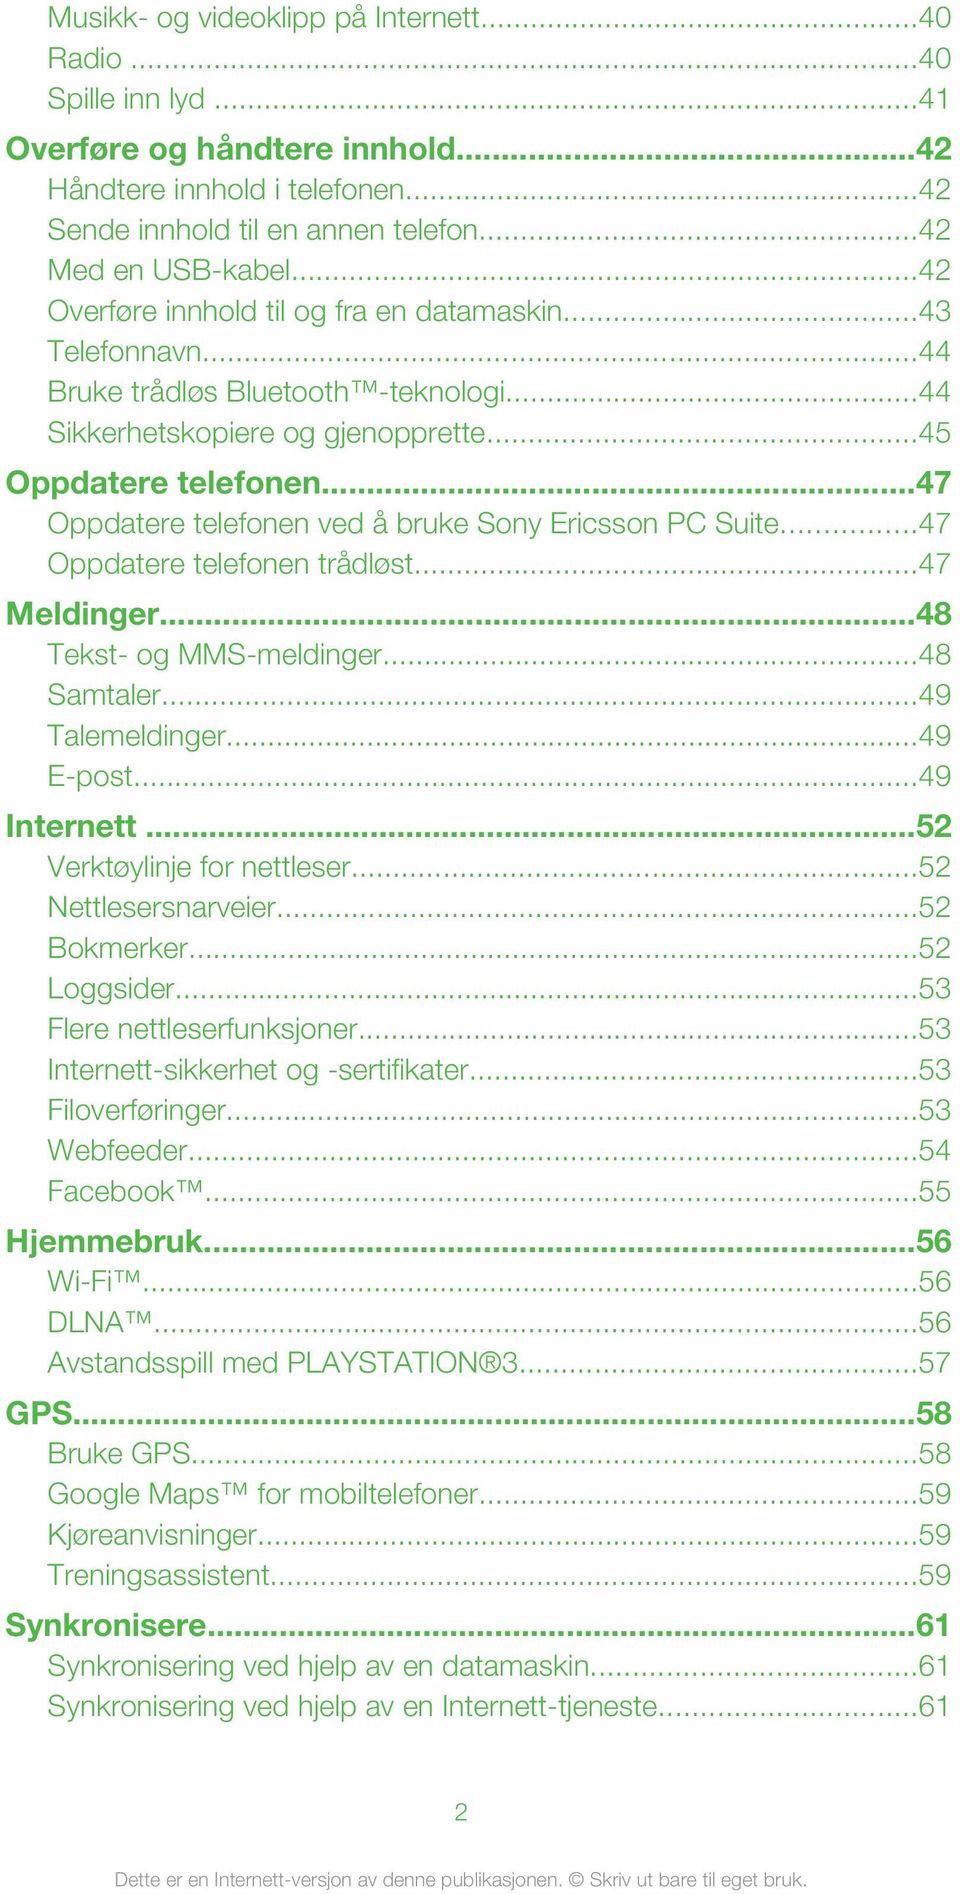 ..47 Oppdatere telefonen ved å bruke Sony Ericsson PC Suite...47 Oppdatere telefonen trådløst...47 Meldinger...48 Tekst- og MMS-meldinger...48 Samtaler...49 Talemeldinger...49 E-post...49 Internett.